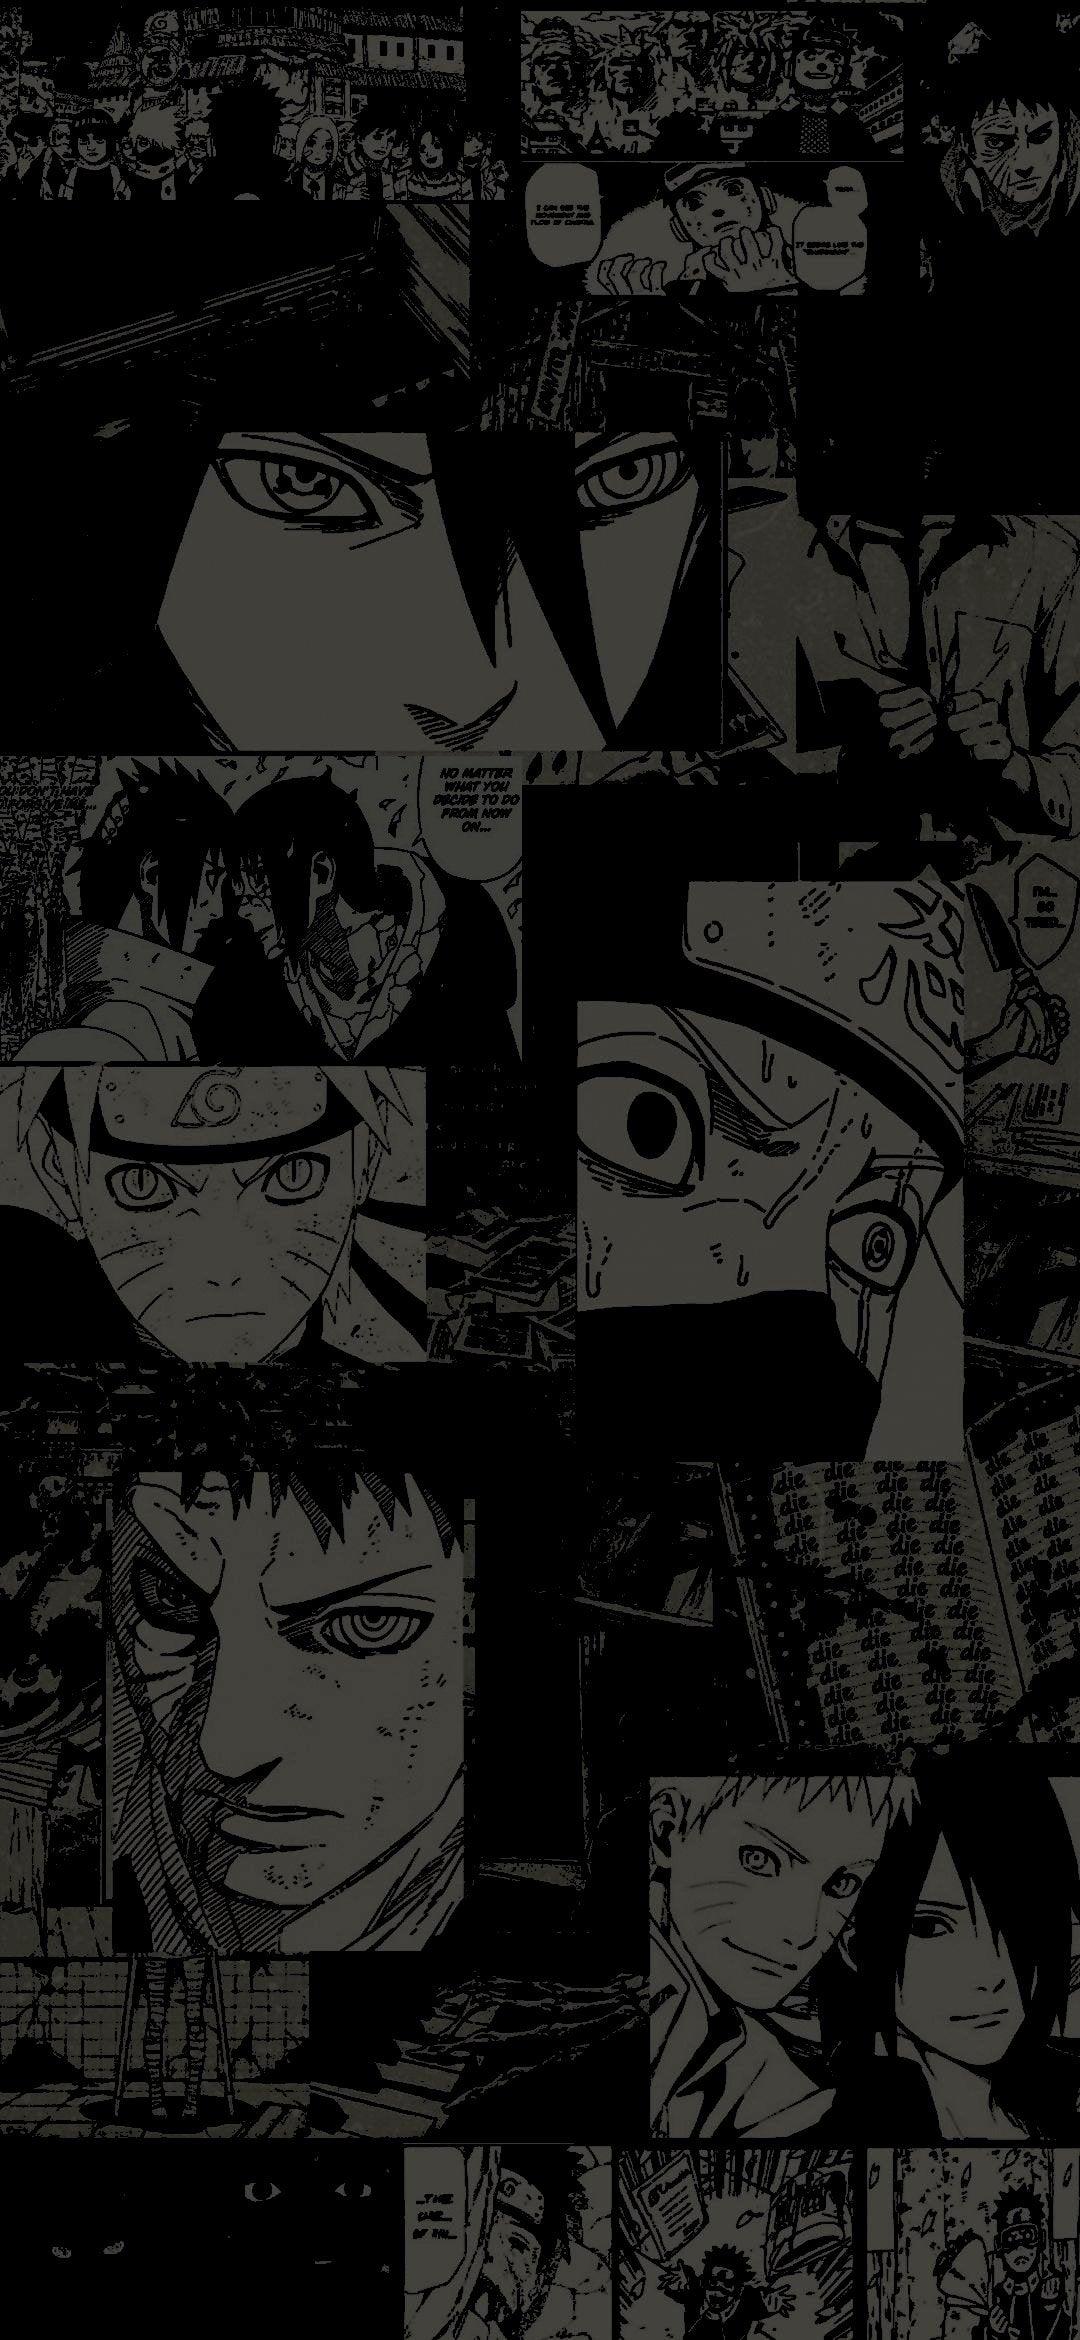 Naruto Manga Panel Wallpapers - Top Free Naruto Manga Panel Backgrounds ...